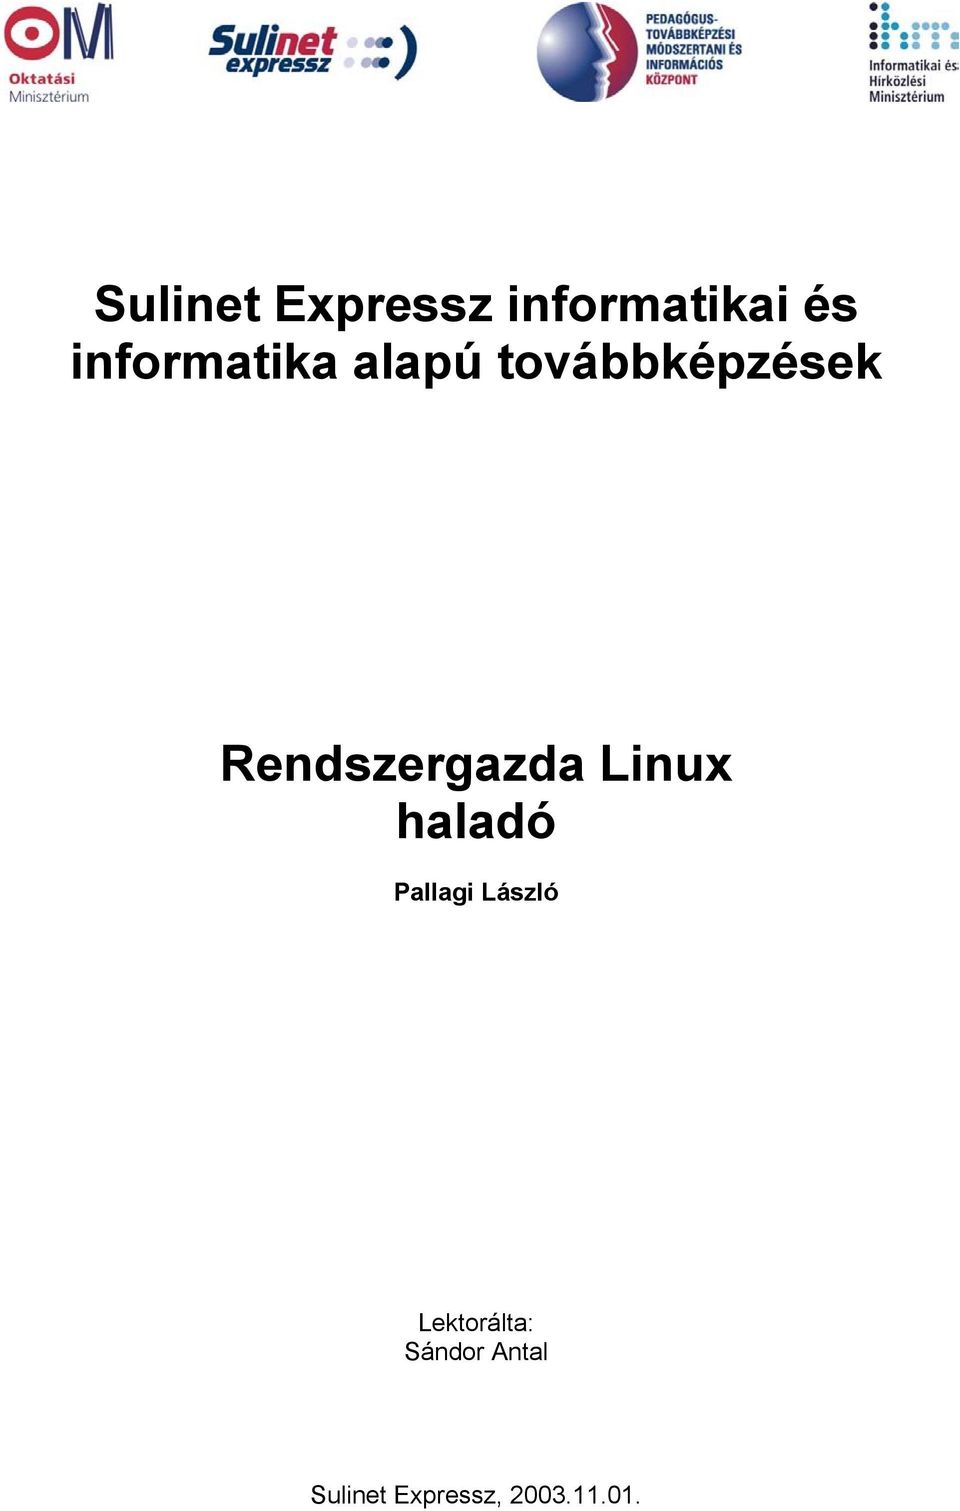 Rendszergazda Linux haladó Pallagi